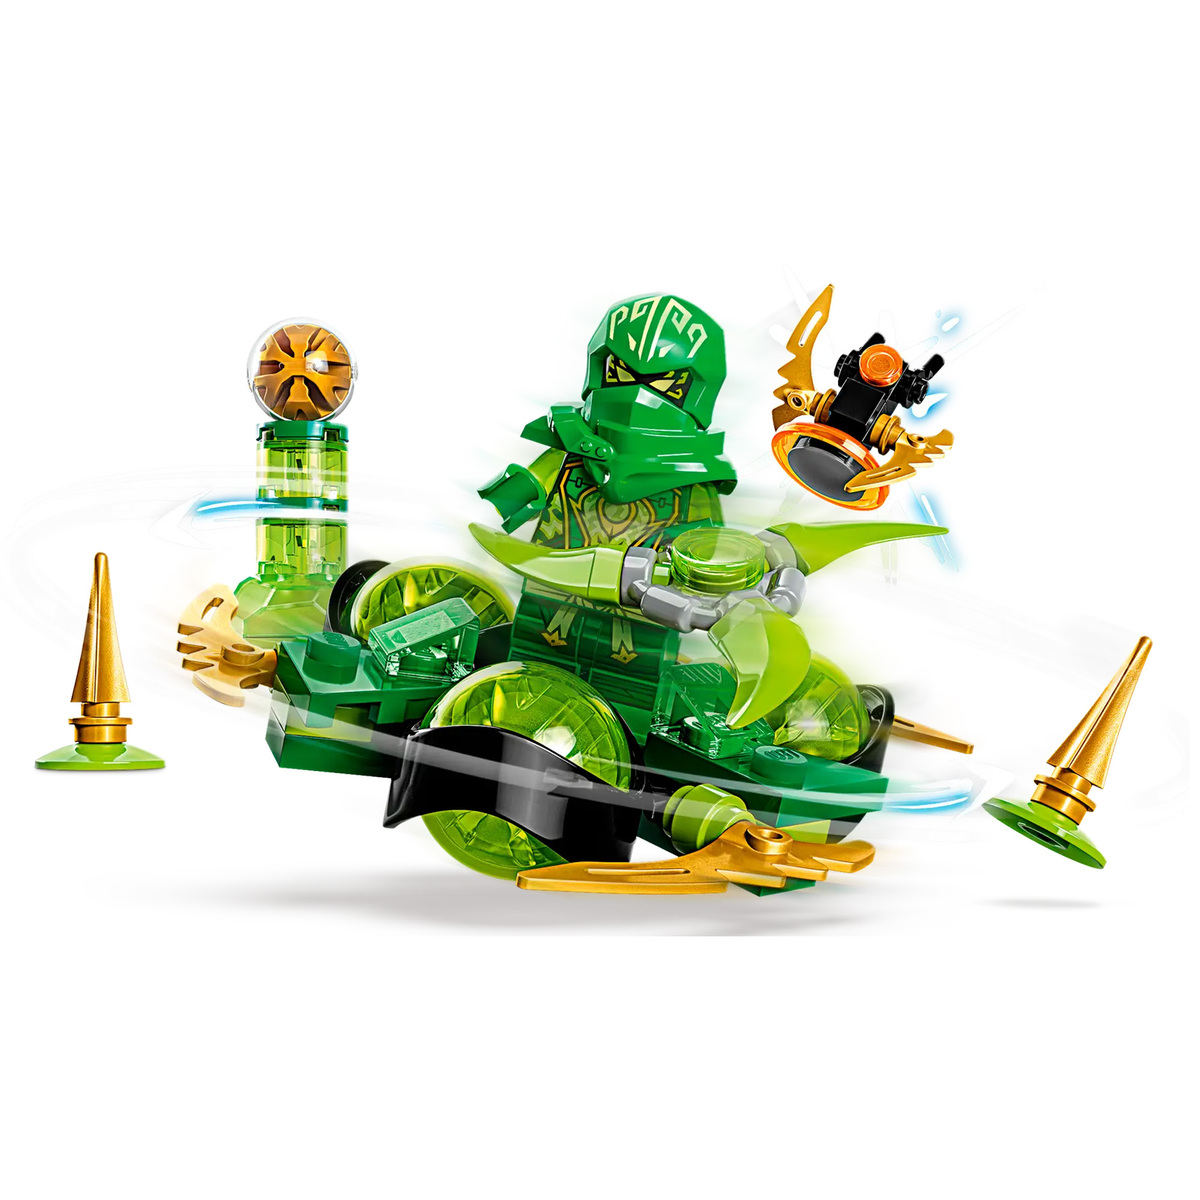 Lego Lloyd's Dragon Power Spinjitzu Spinning Building Toy Playset, 71779